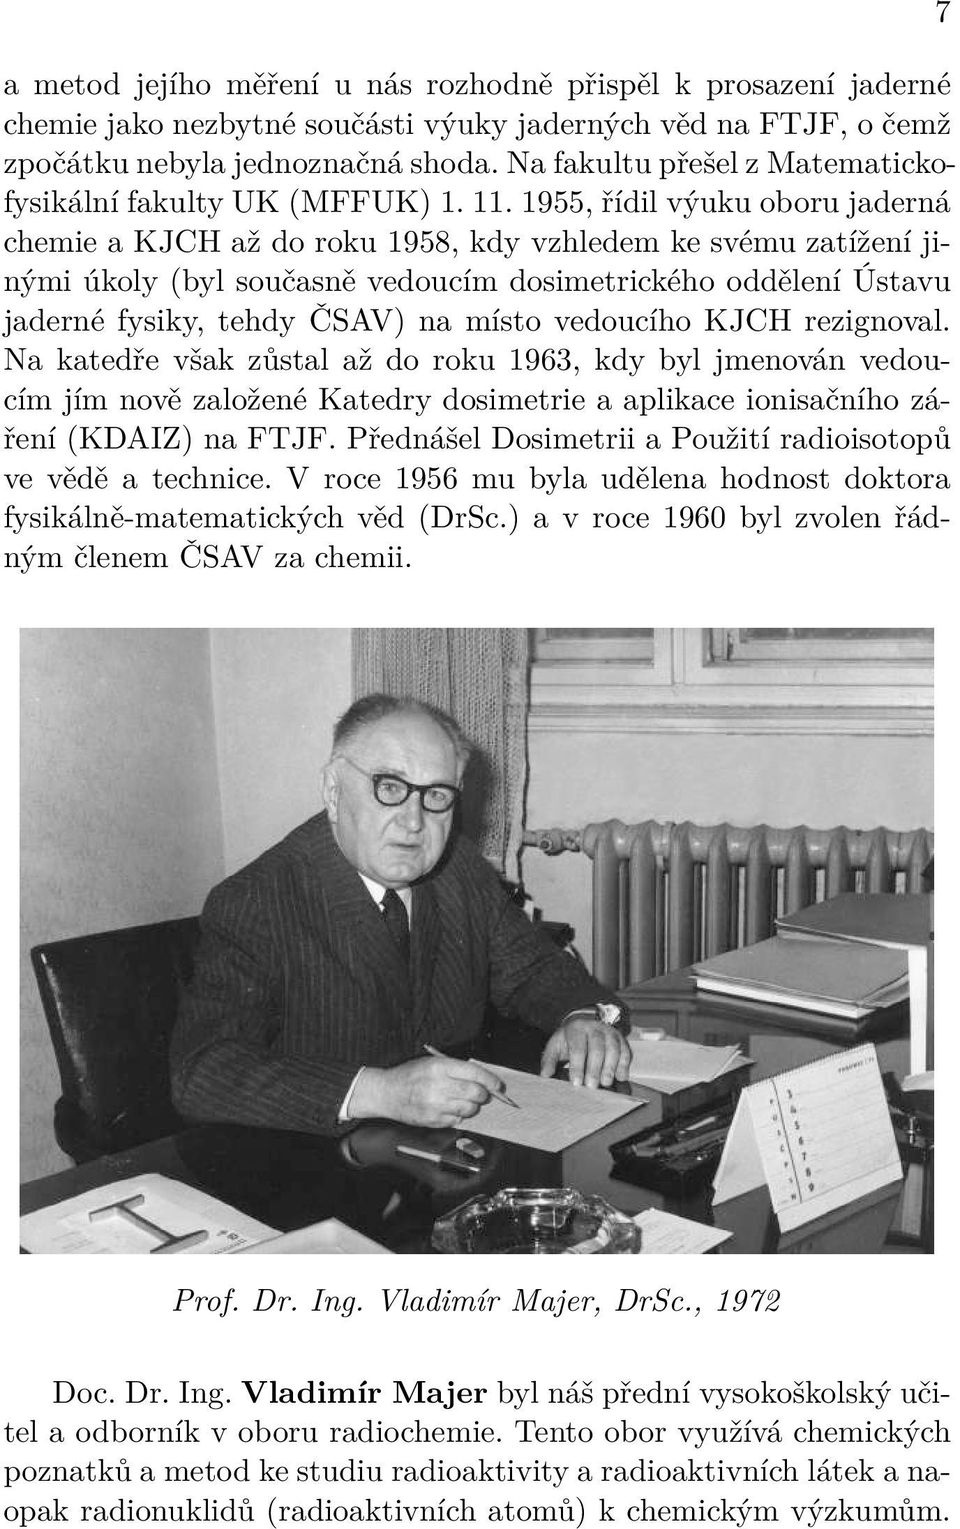 1955, řídil výuku oboru jaderná chemie a KJCH až do roku 1958, kdy vzhledem ke svému zatížení jinými úkoly (byl současně vedoucím dosimetrického oddělení Ústavu jaderné fysiky, tehdy ČSAV) na místo